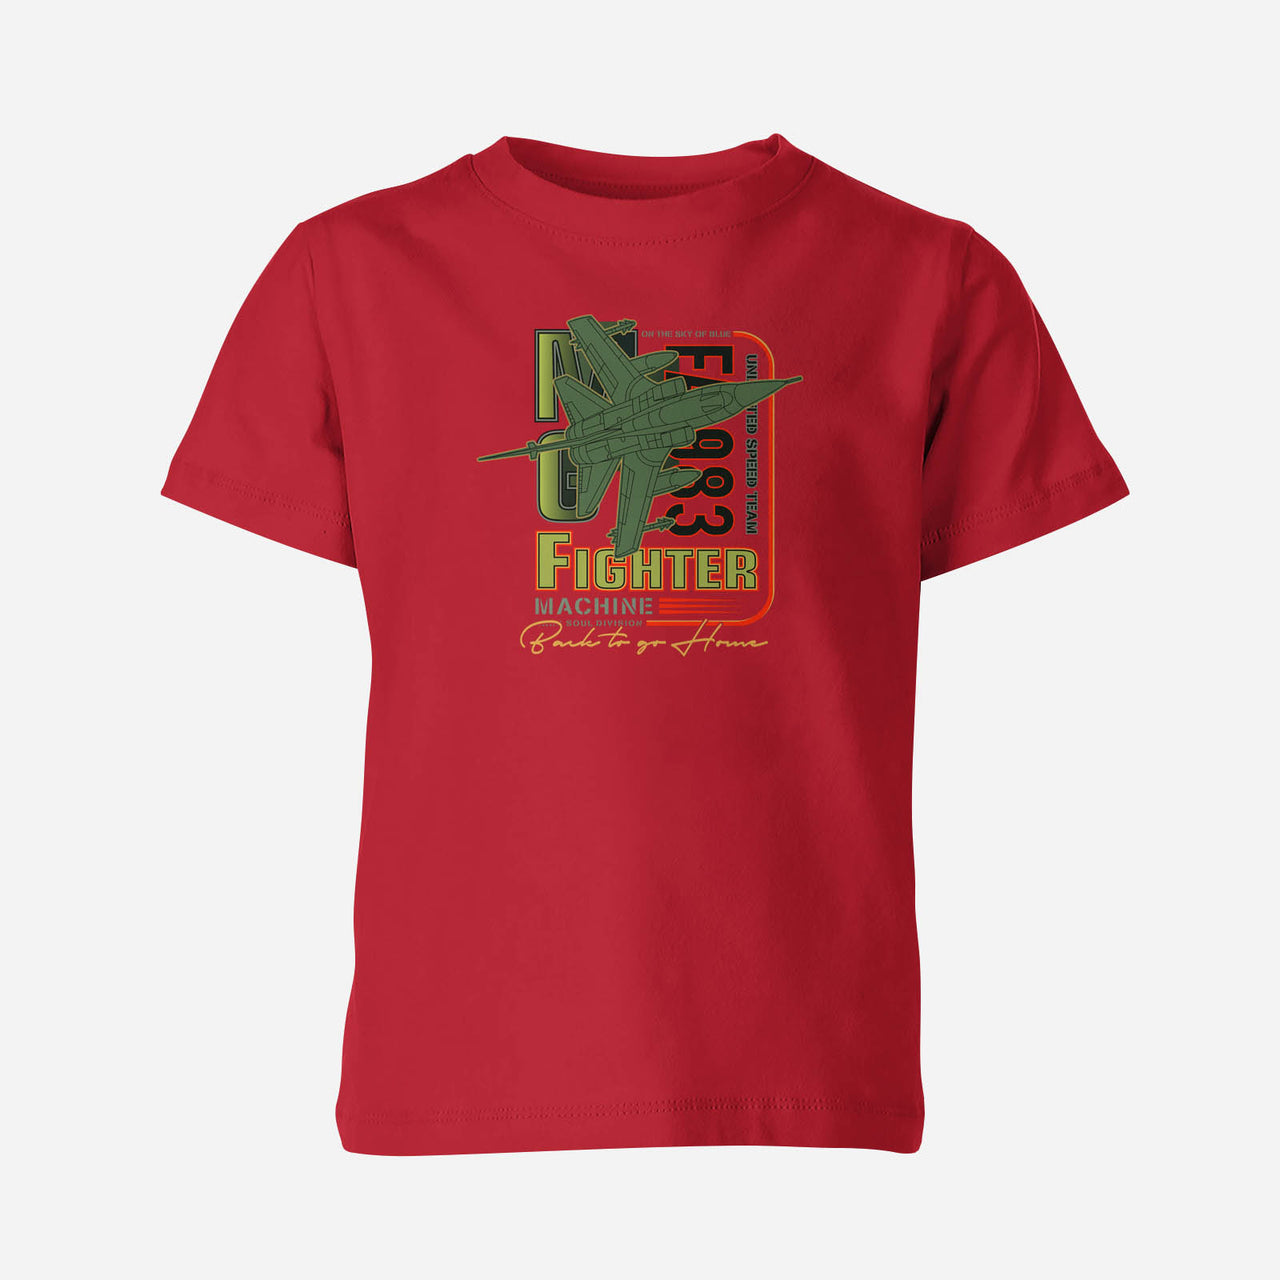 Fighter Machine Designed Children T-Shirts